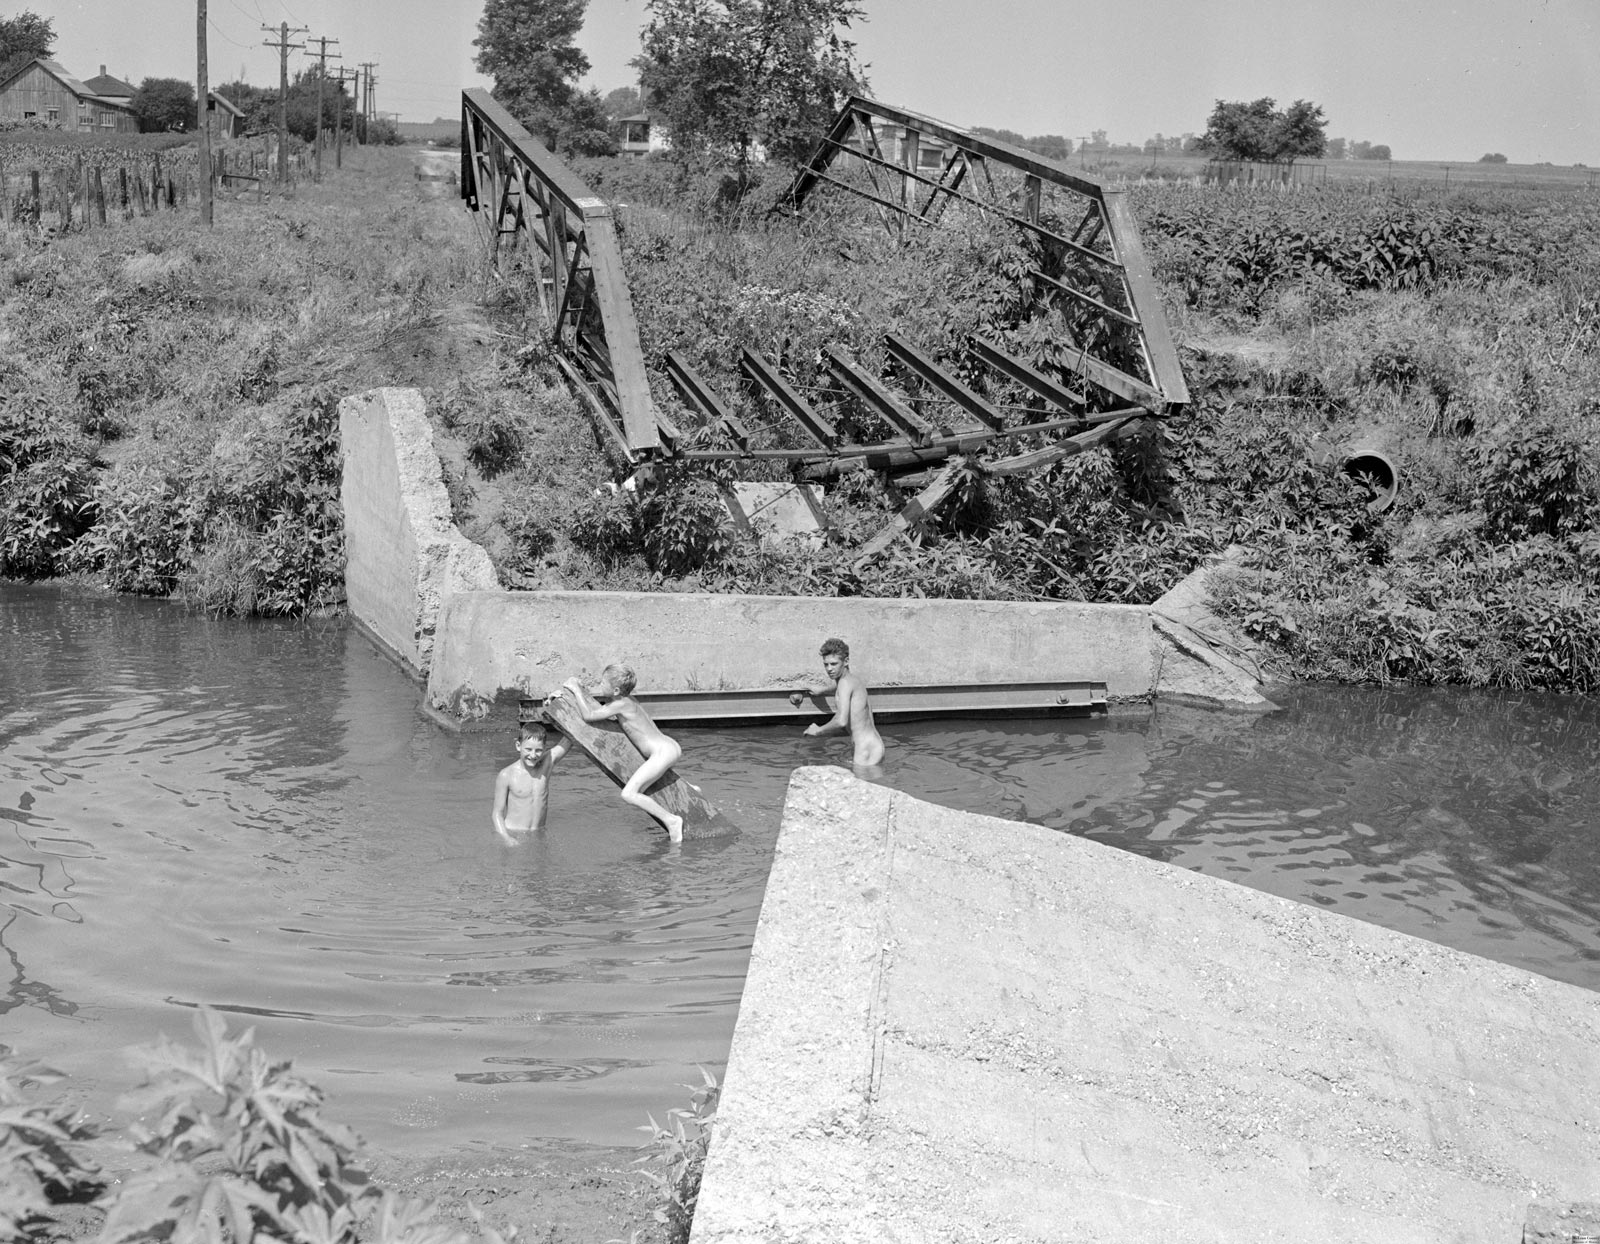 Boys skinny dipping at washed out bridge on Sugar Creek (Мальчишки купаются голышом у смытого моста в Сахарном ручье), 1946